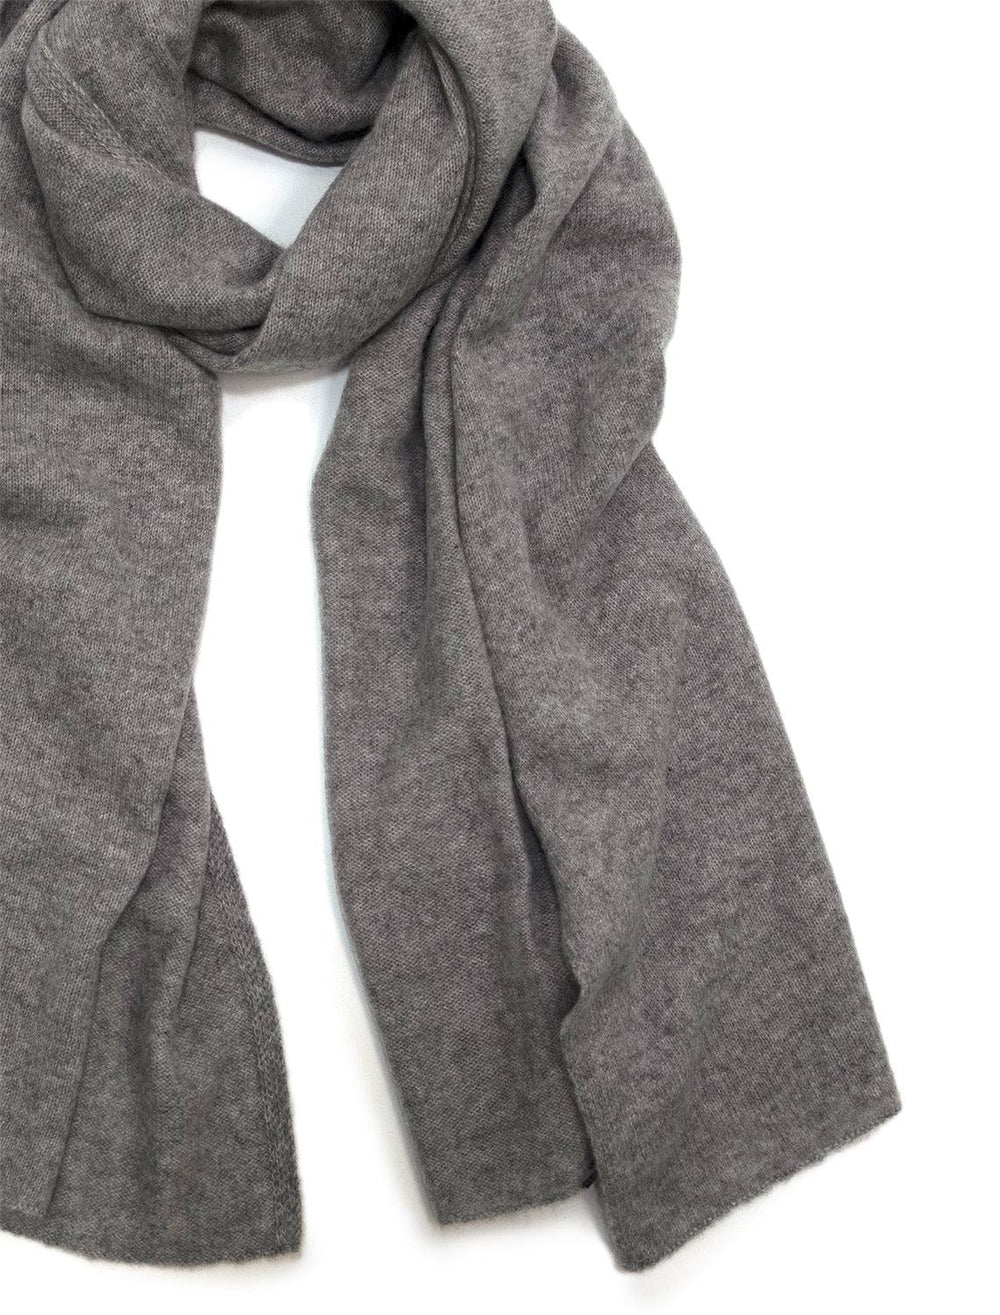 White + Warren's cashmere scarf in grey heather.